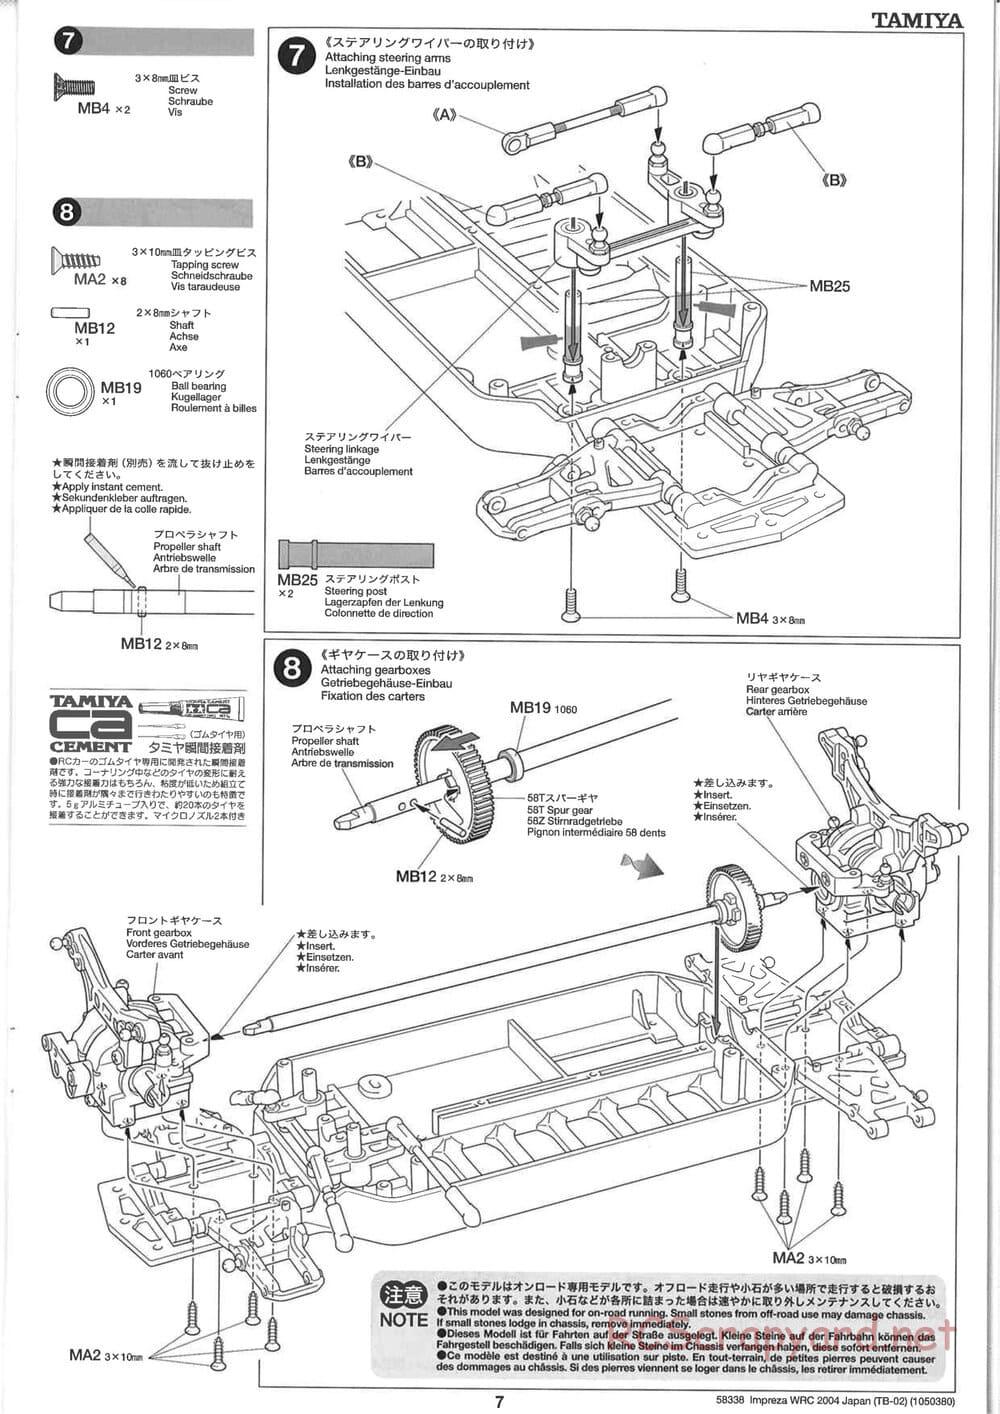 Tamiya - Subaru Impreza WRC 2004 Rally Japan - TB-02 Chassis - Manual - Page 7